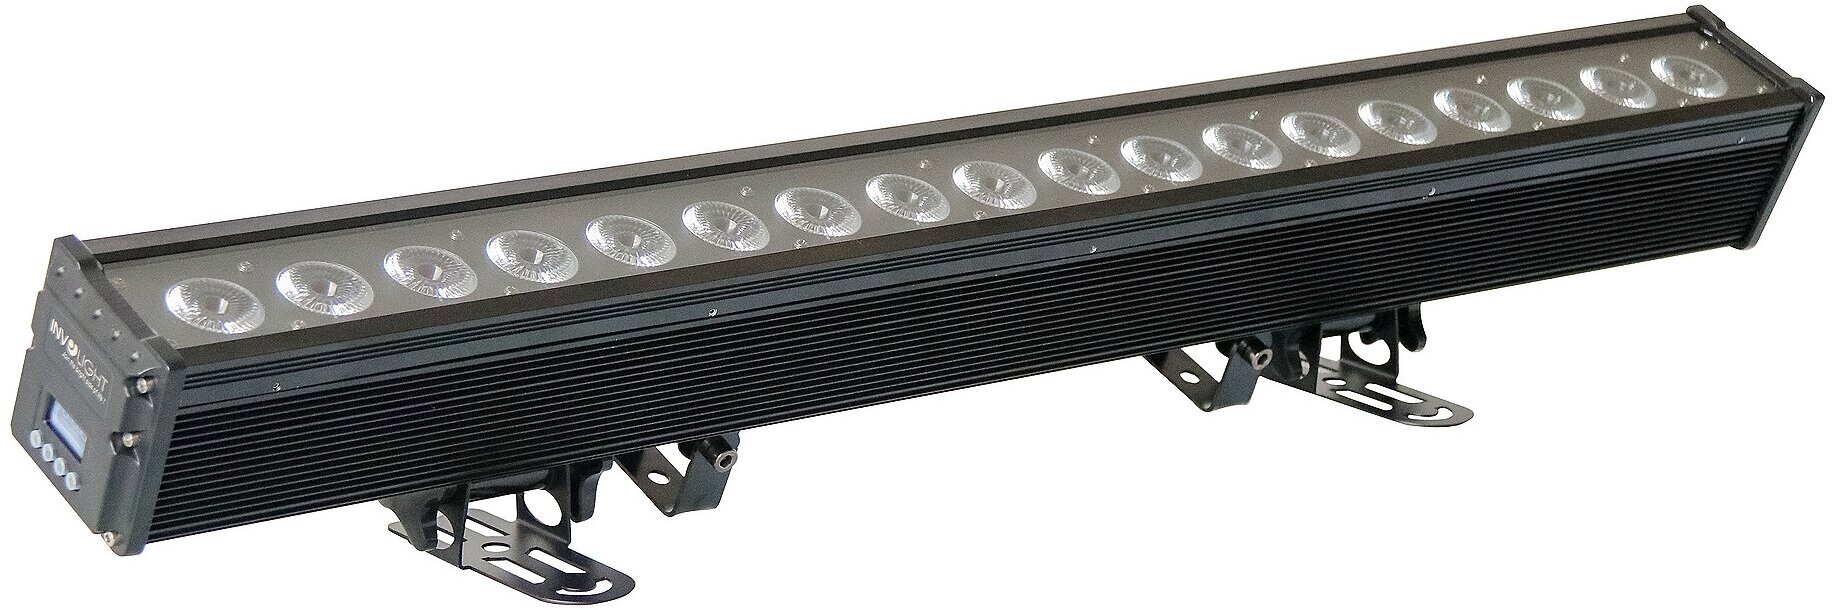 INVOLIGHT LEDBAR1810W всепогодная LED панель, 18шт. RGBW, IP65, DMX-512,